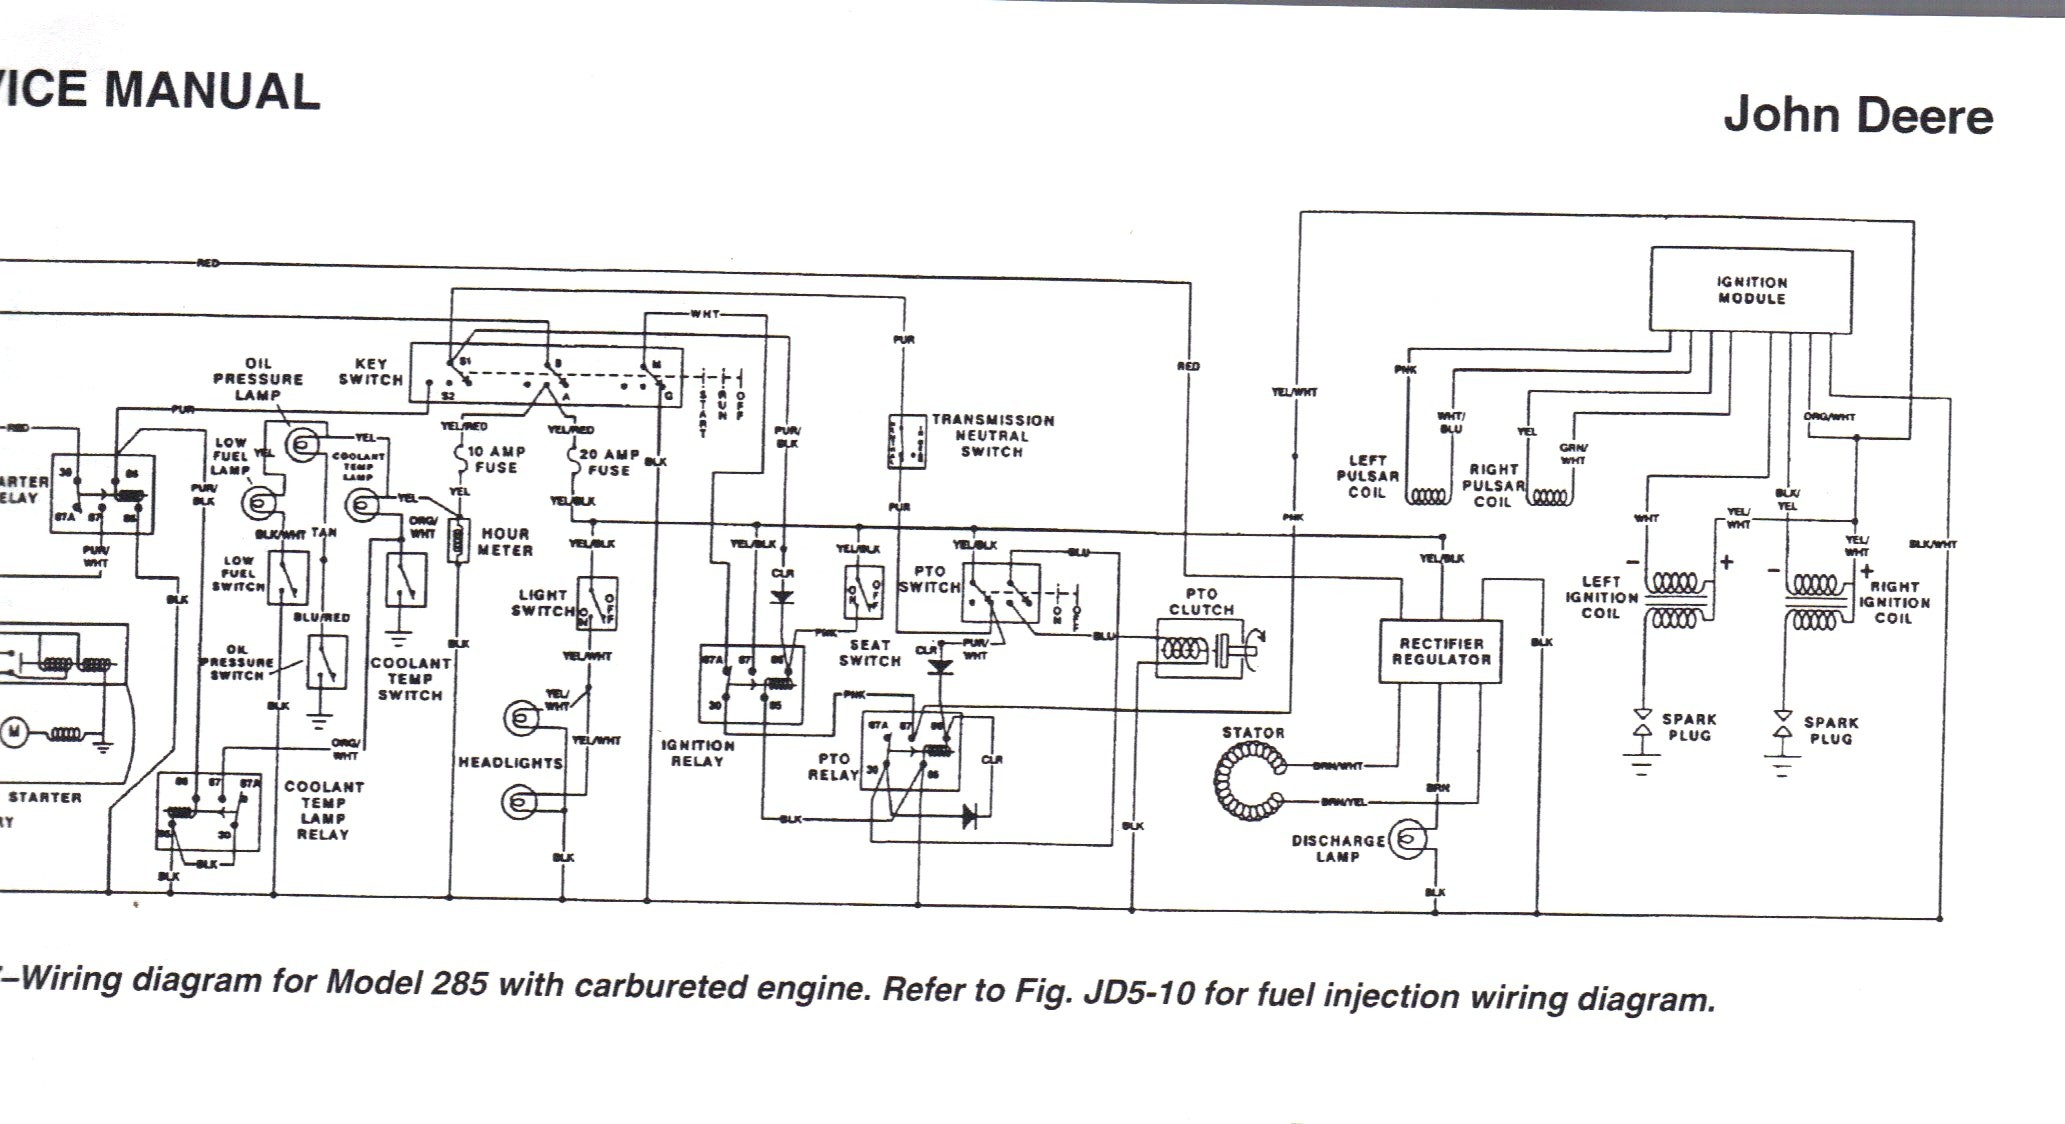 John Deere 100 Wiring Schematic John Deere 100 Series Wiring Diagram Of John Deere 100 Wiring Schematic